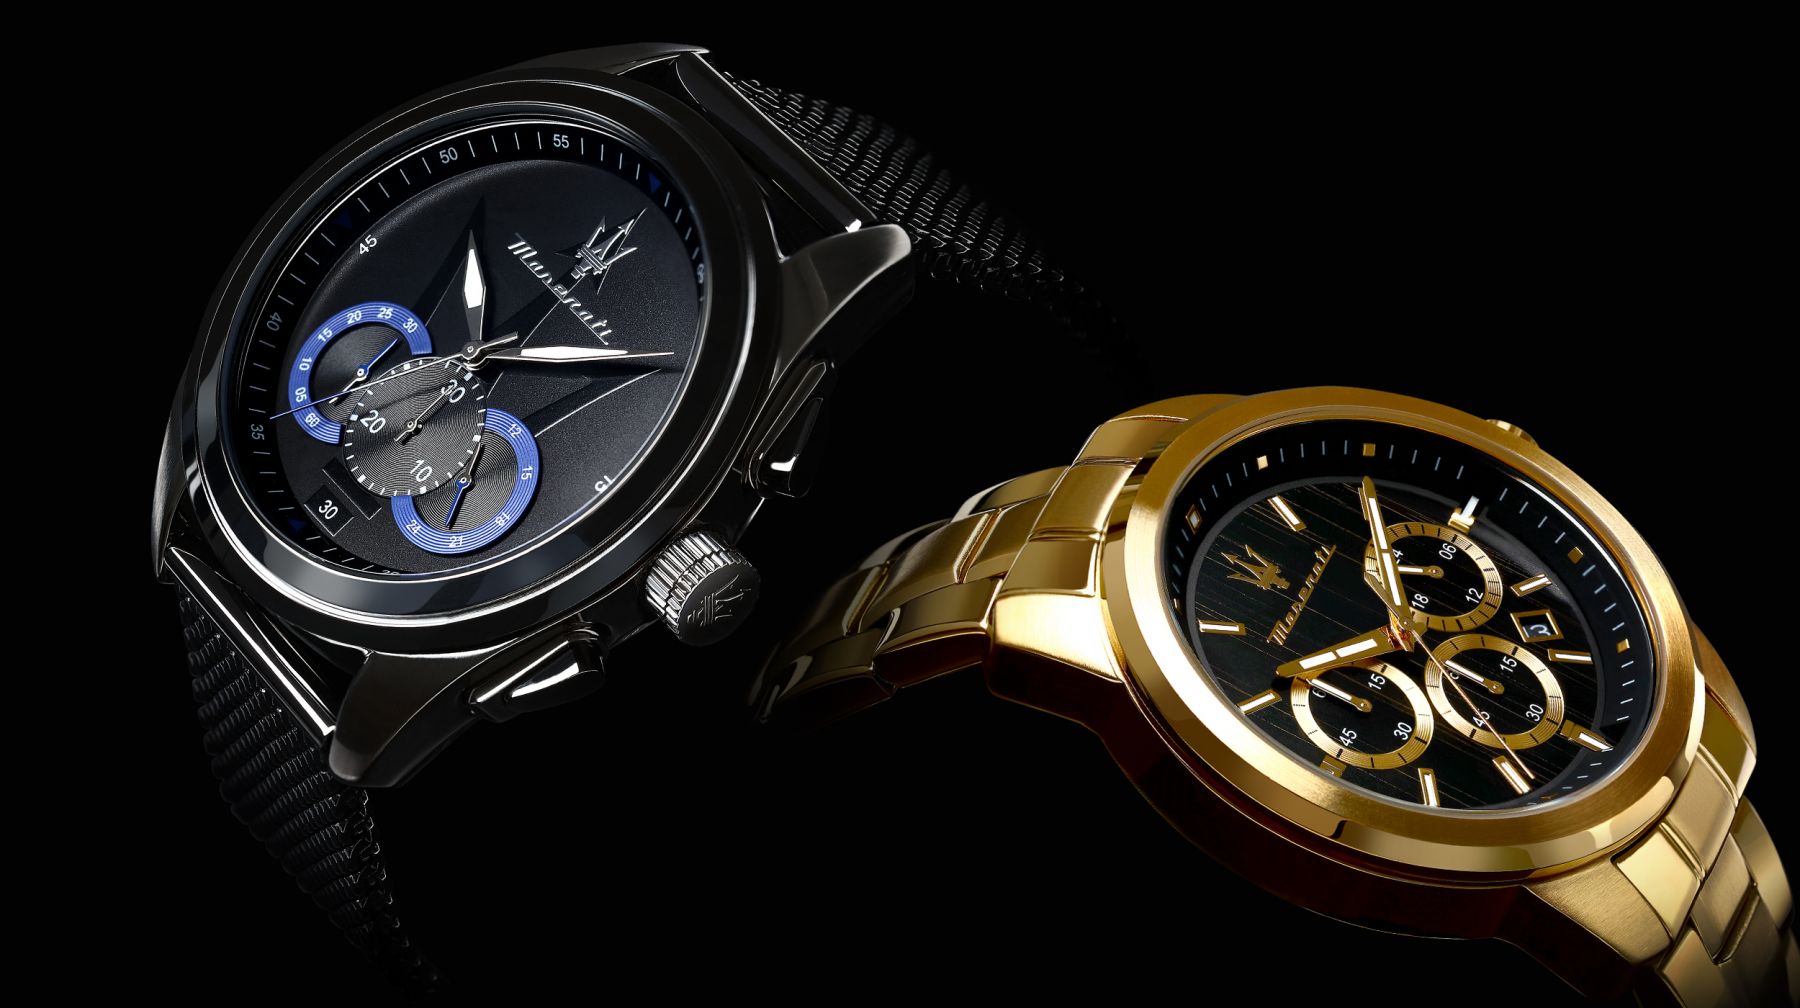 Reloj MASERATI - Hombre R8871612001 a 280€  Reloj de hombre, Relojes con  esqueleto, Maserati